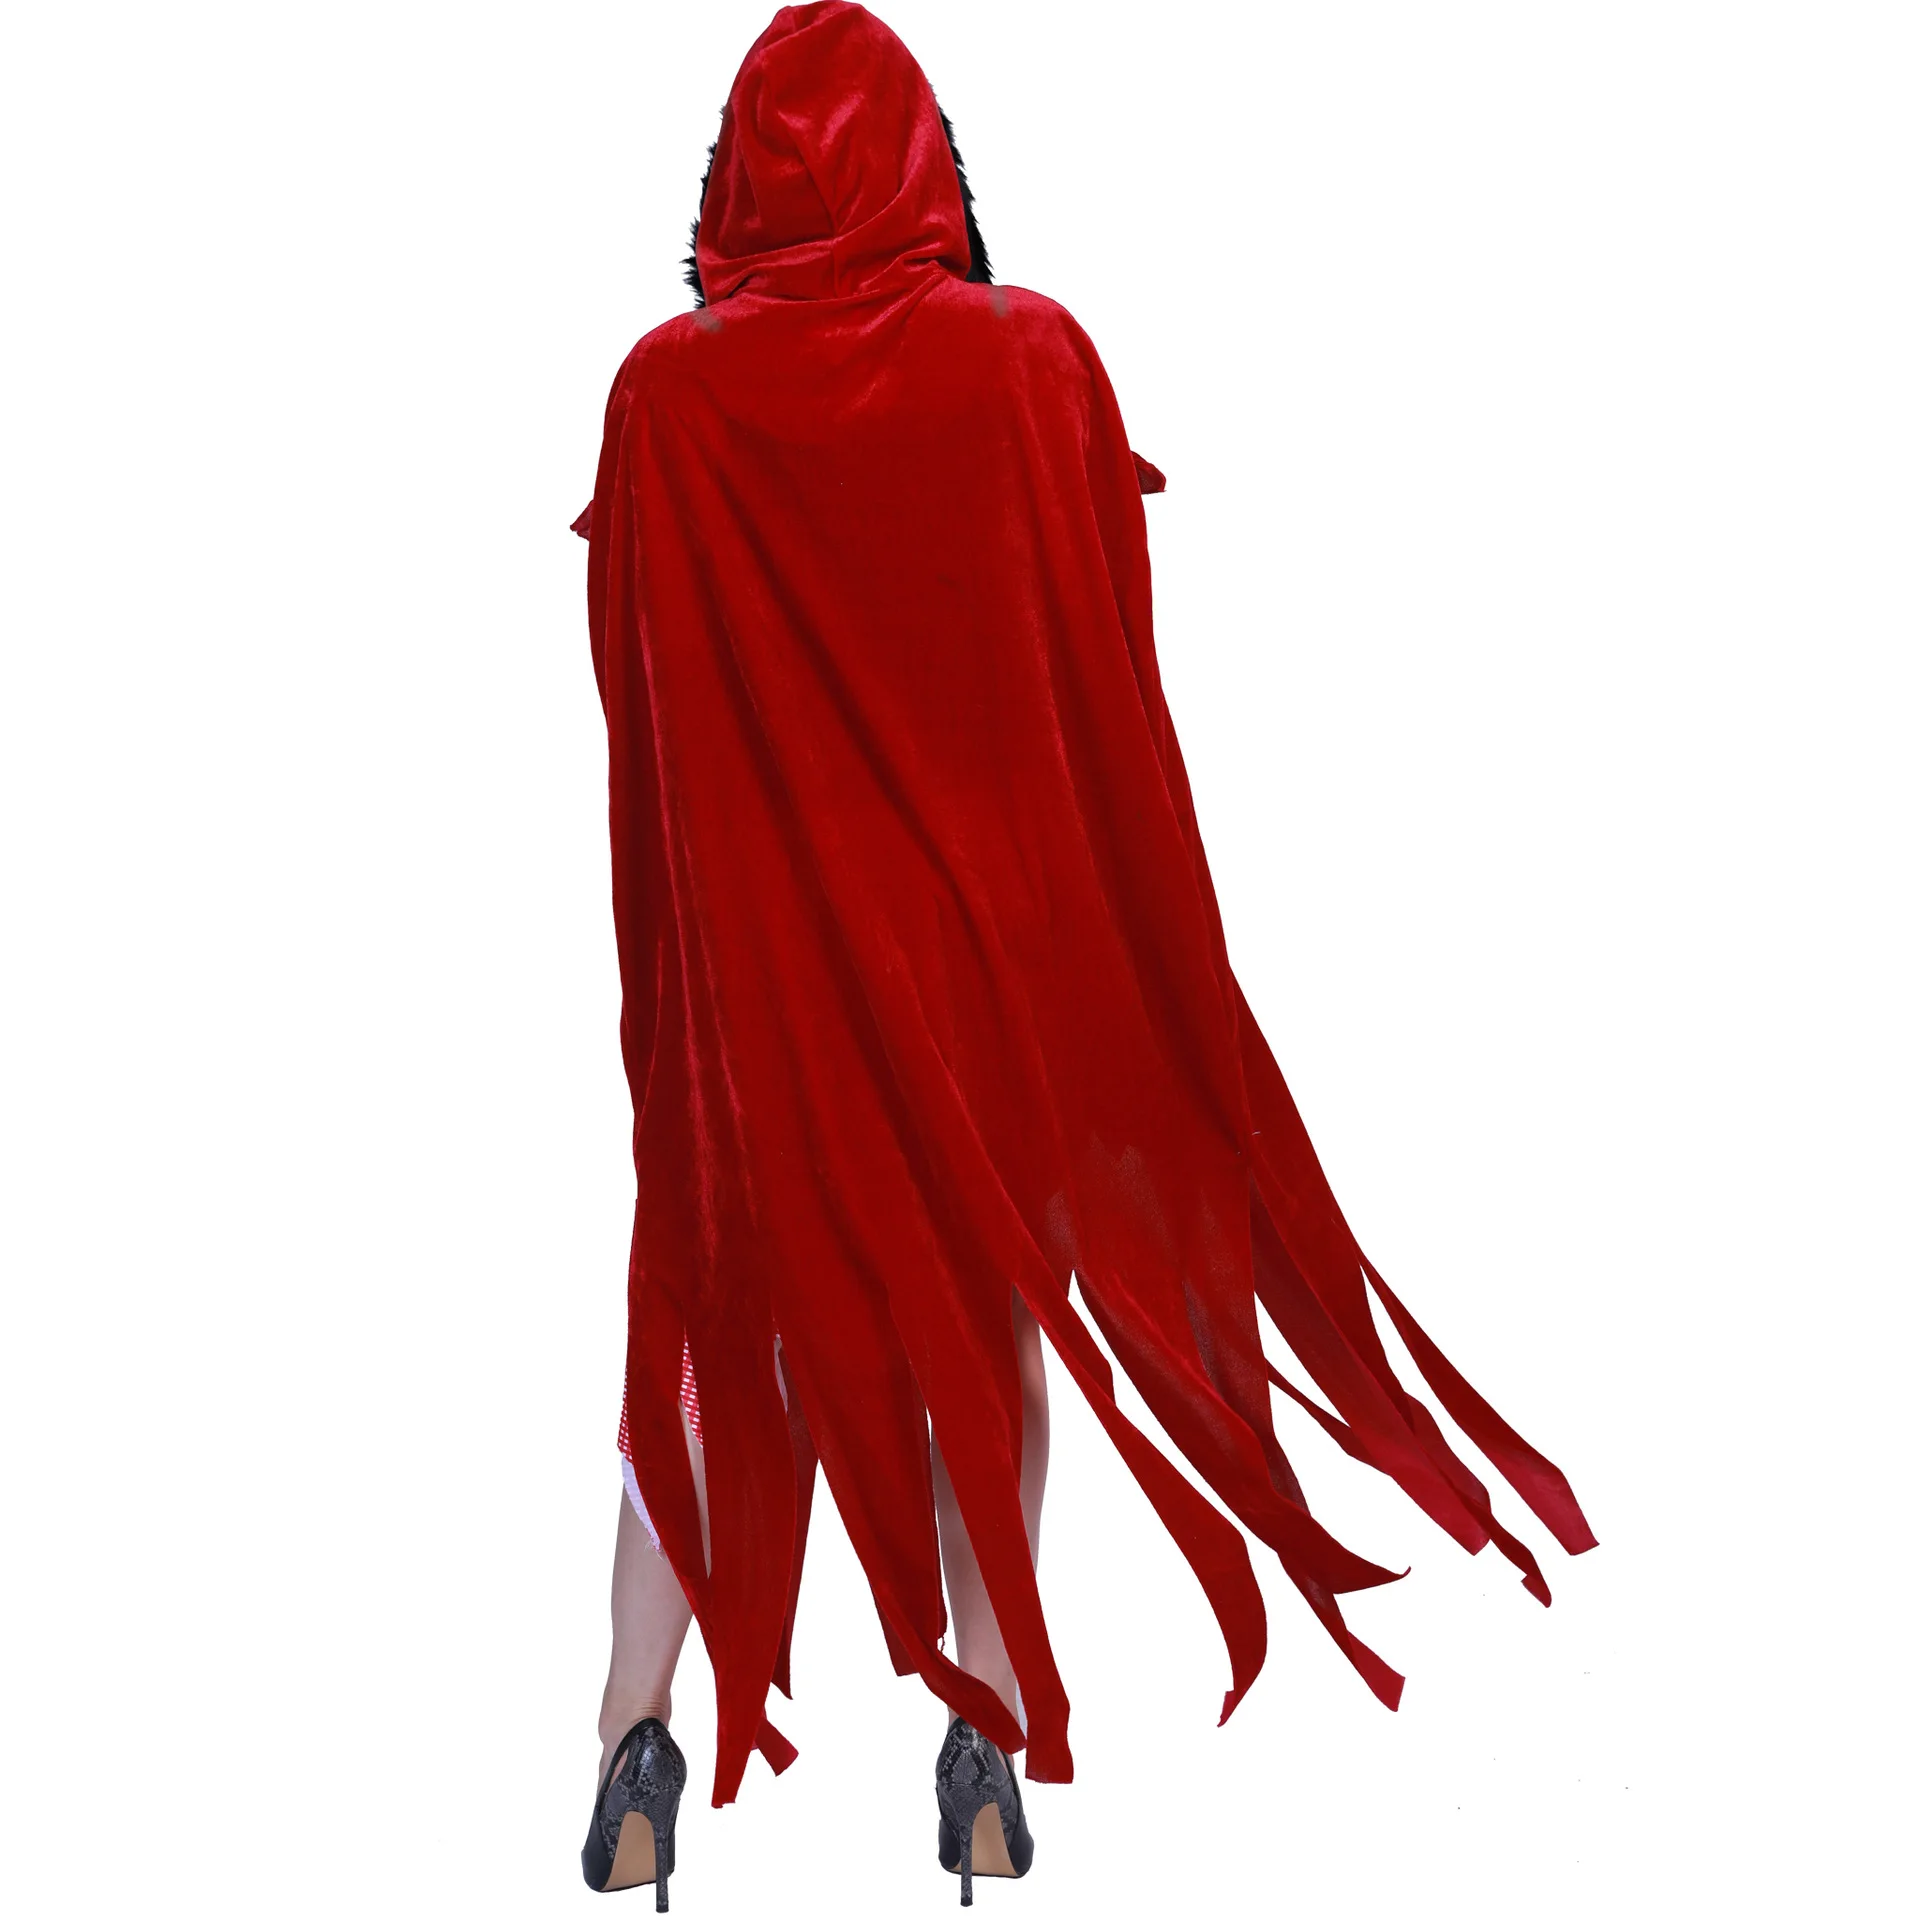 Костюм для взрослых женщин на Хеллоуин костюм Красная шапочка халат с капюшоном леди платье с вышивкой вечерние плащ для девочек